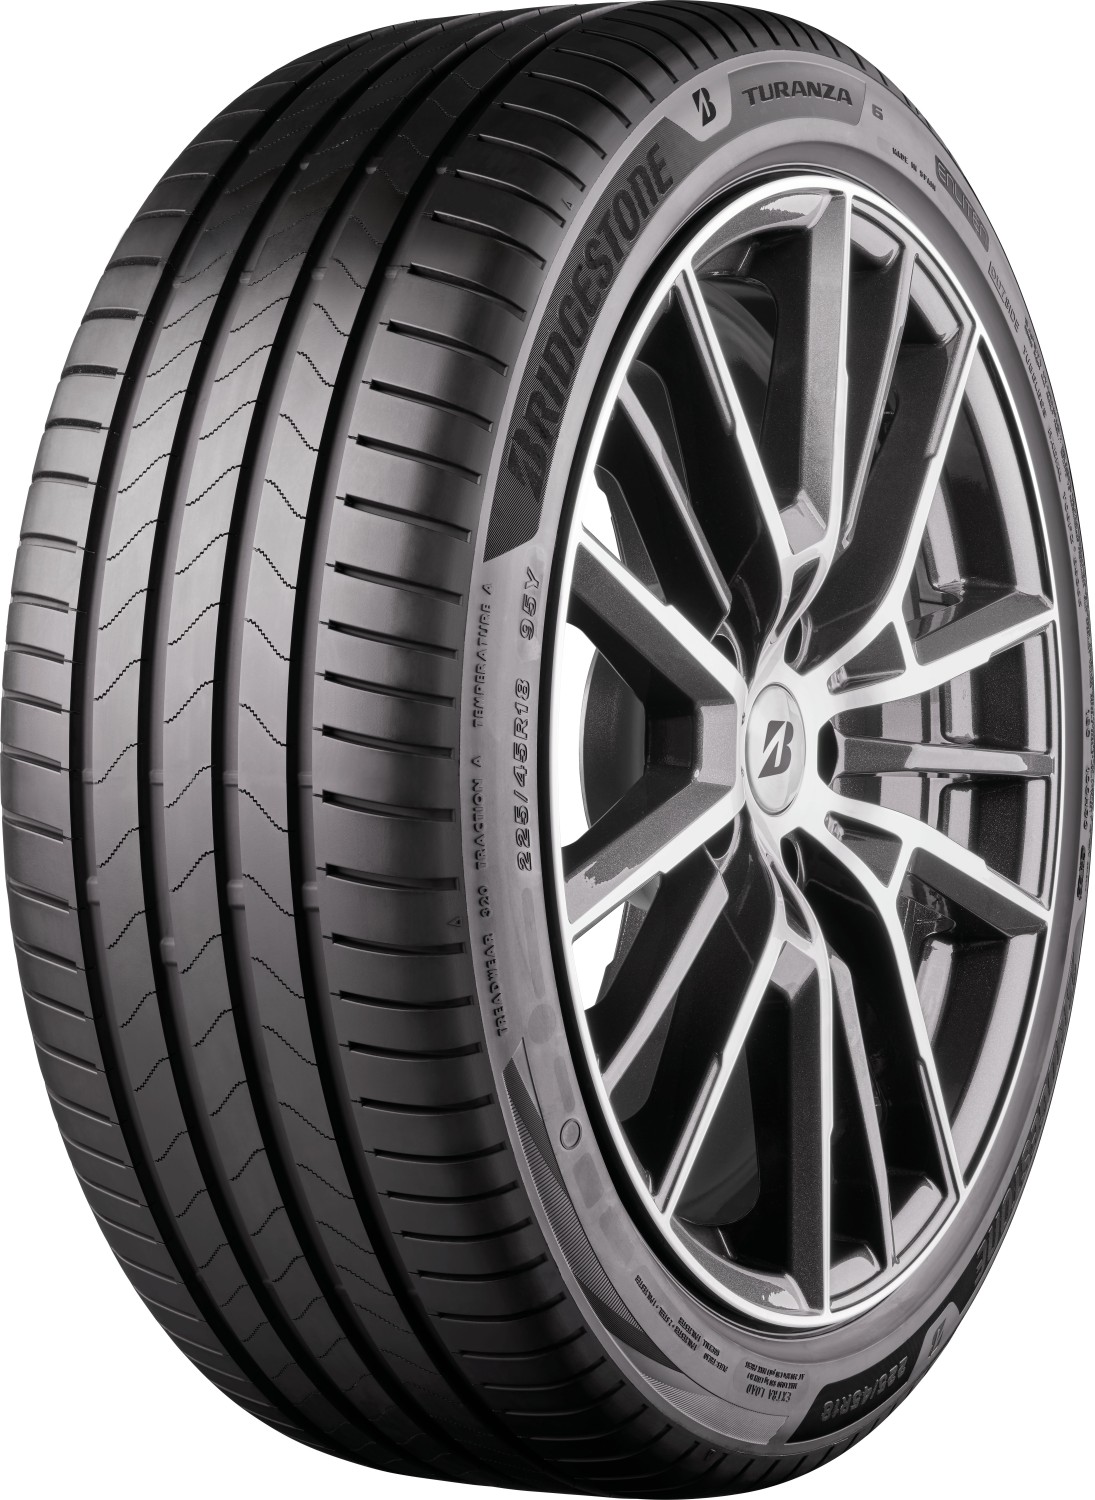 Автомобилни гуми BRIDGESTONE TURANZA 6 XL MERCEDES FP 245/45 R19 102Y